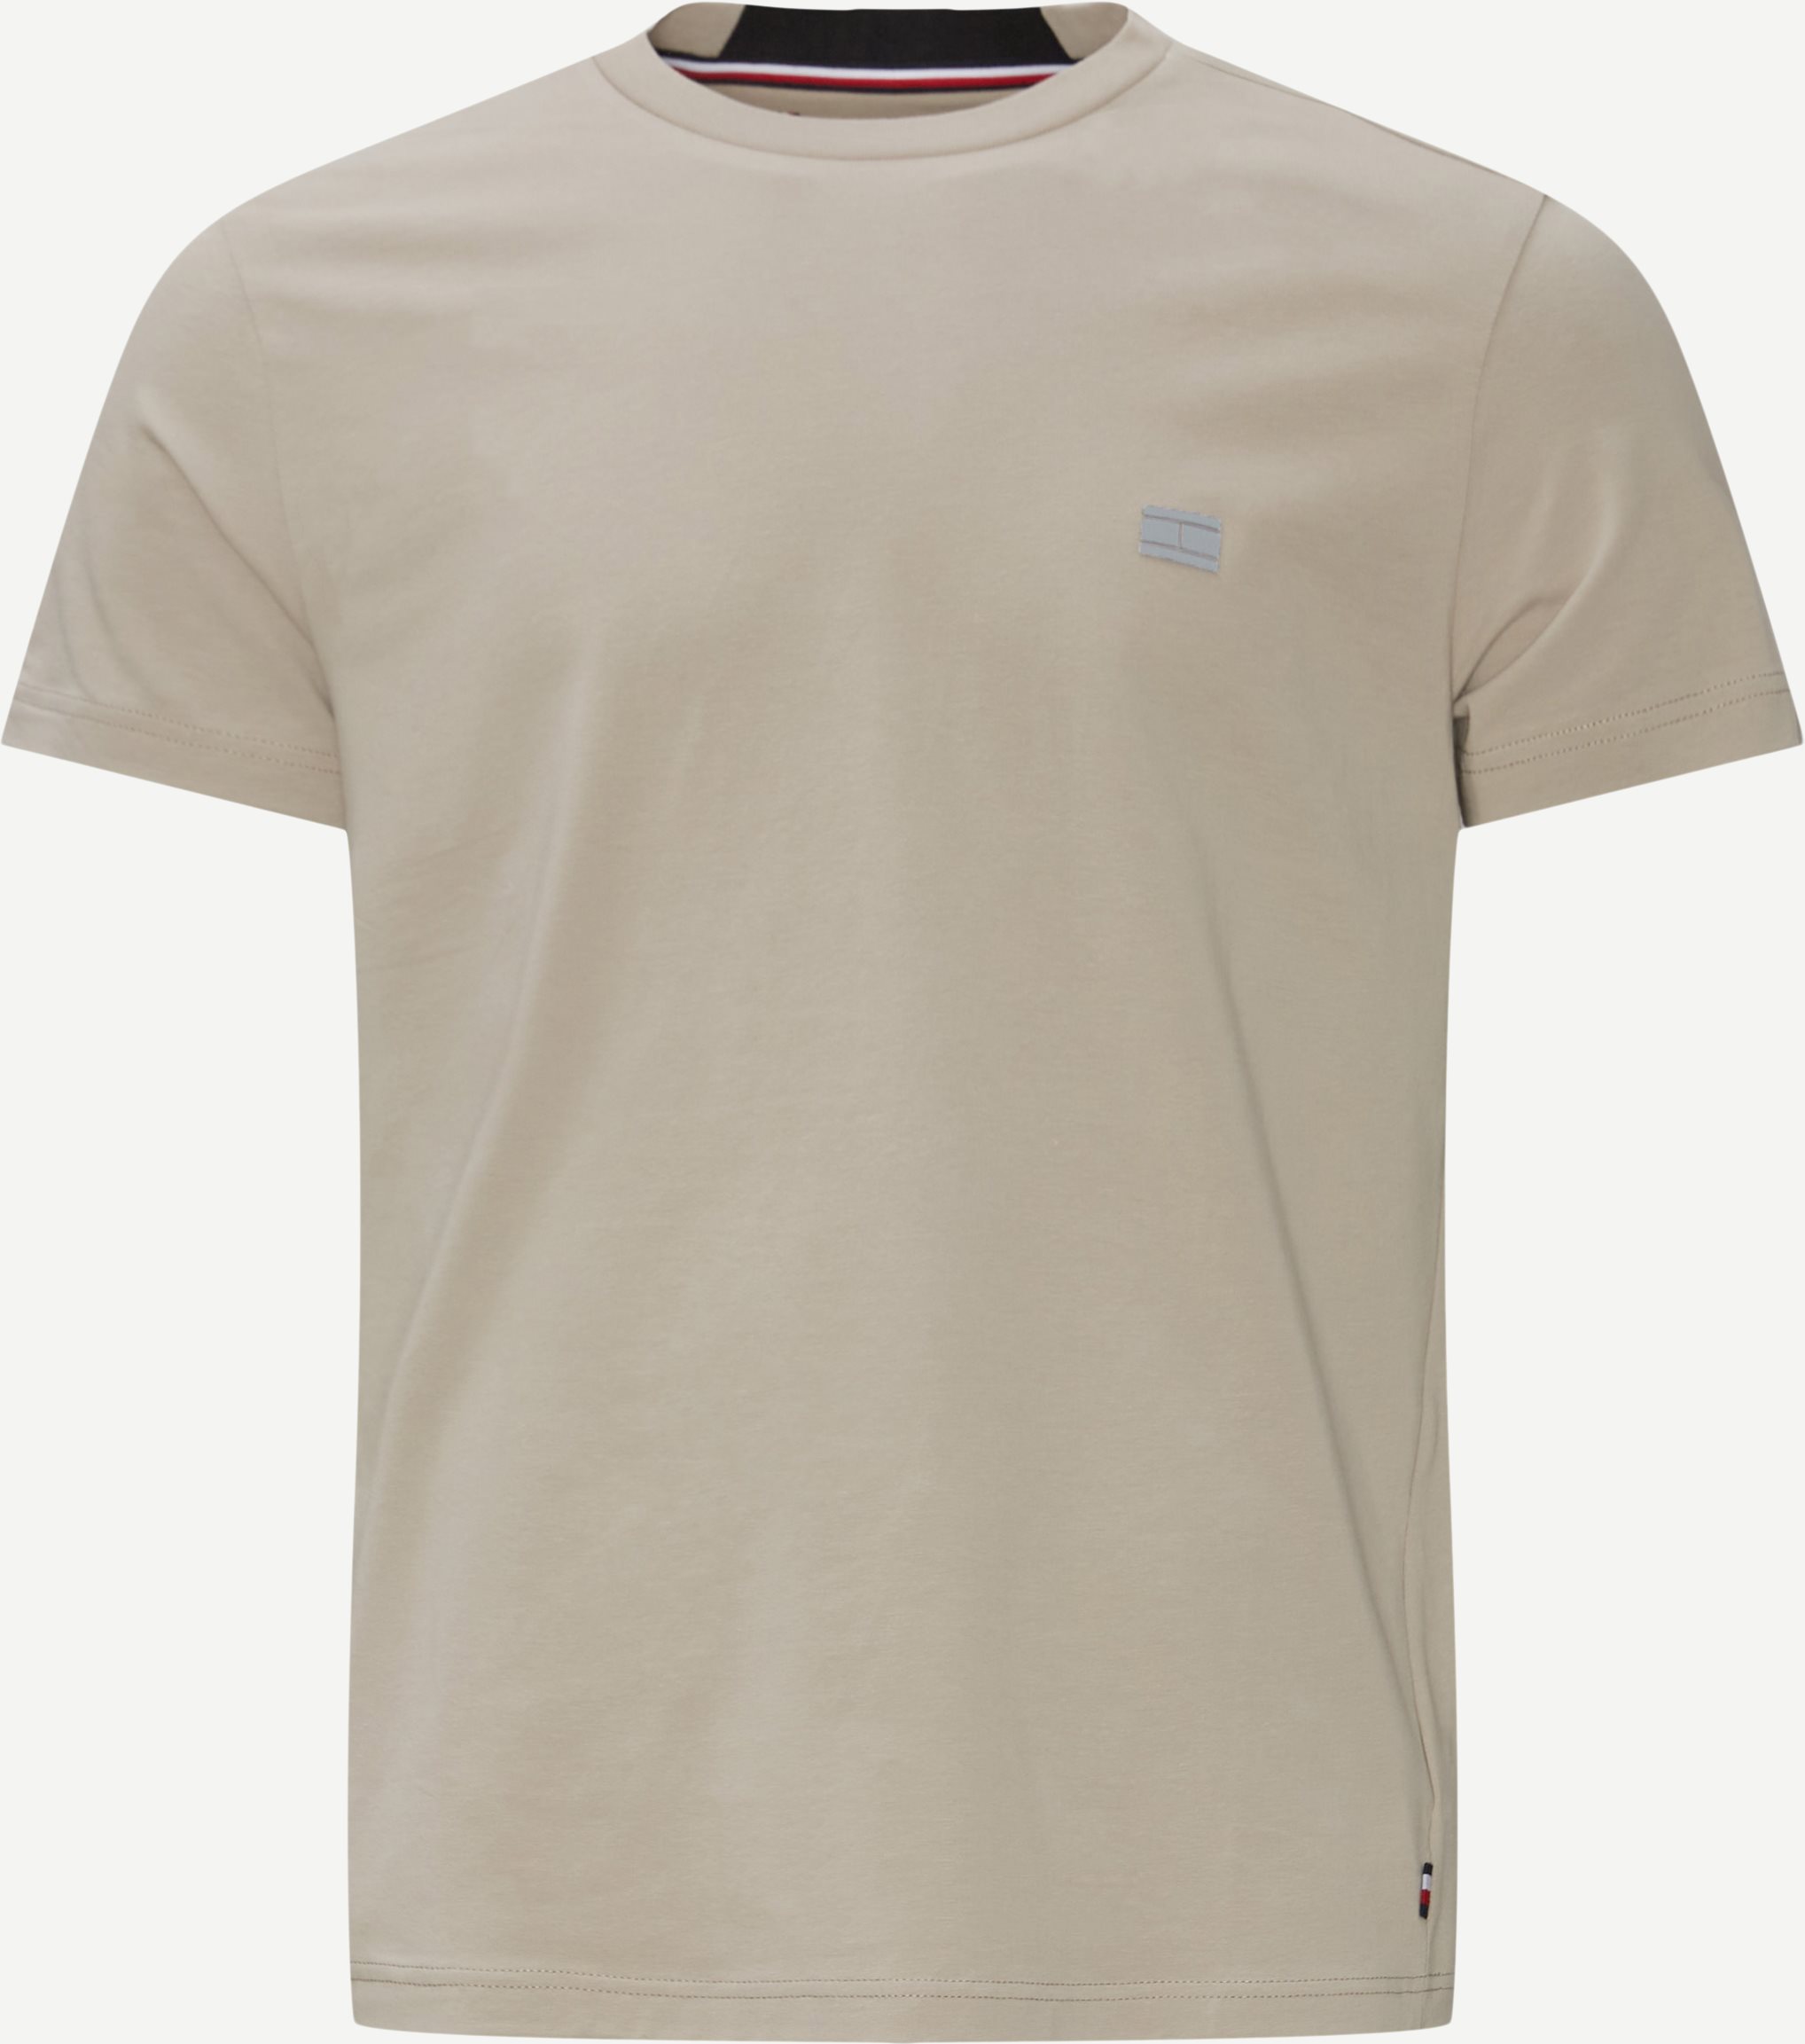 Tech Essentials T-shirt - T-shirts - Regular fit - Grå